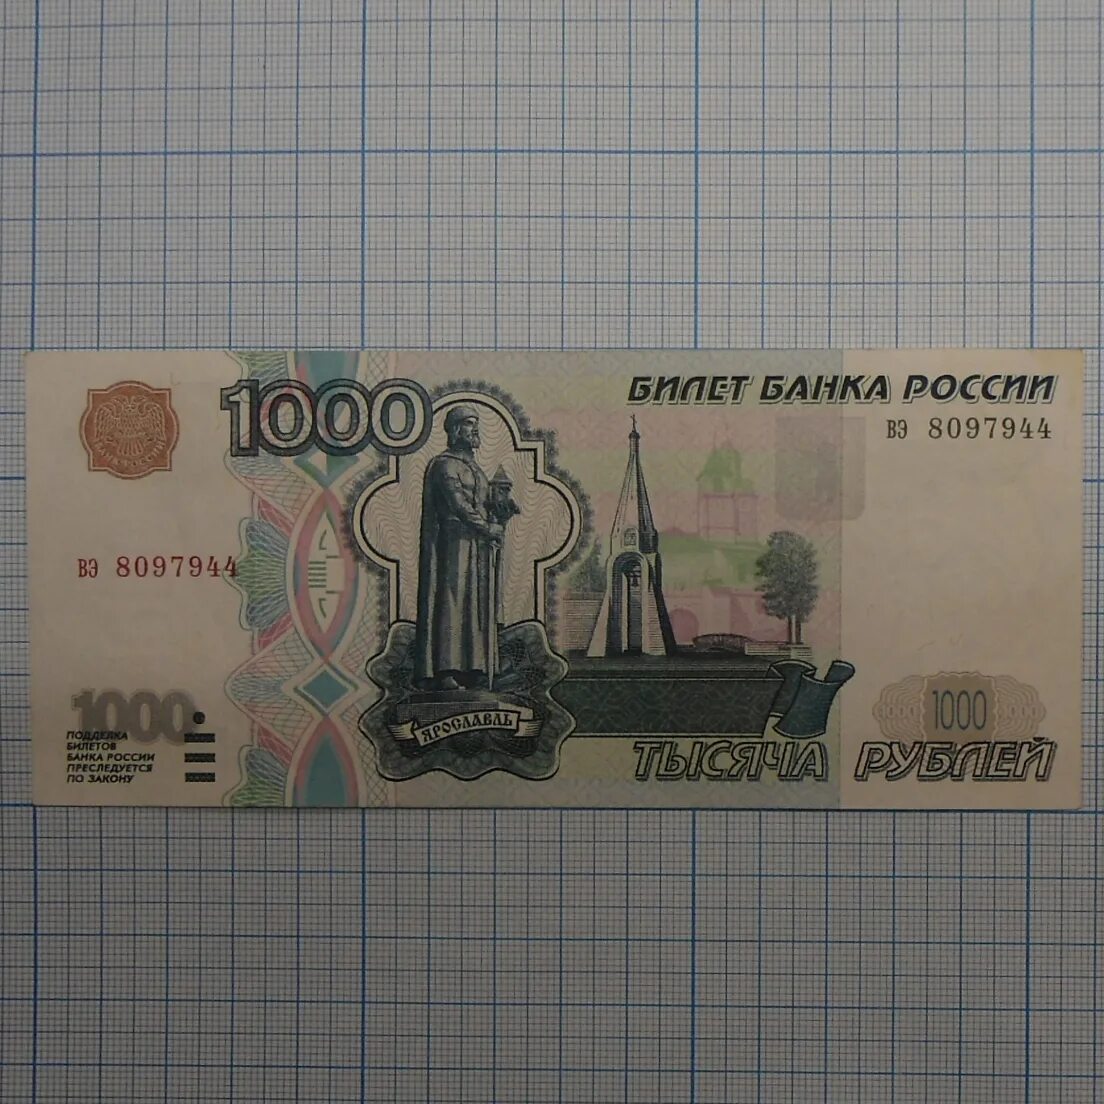 1000 рублей год. 1000 Рублей 1997 (модификация 2004 года) UNC. 1000 Рублей 1997 модификация 2004. Купюра 1000 рублей 1997 модификация. 1000 Рублей 2004 года модификации.